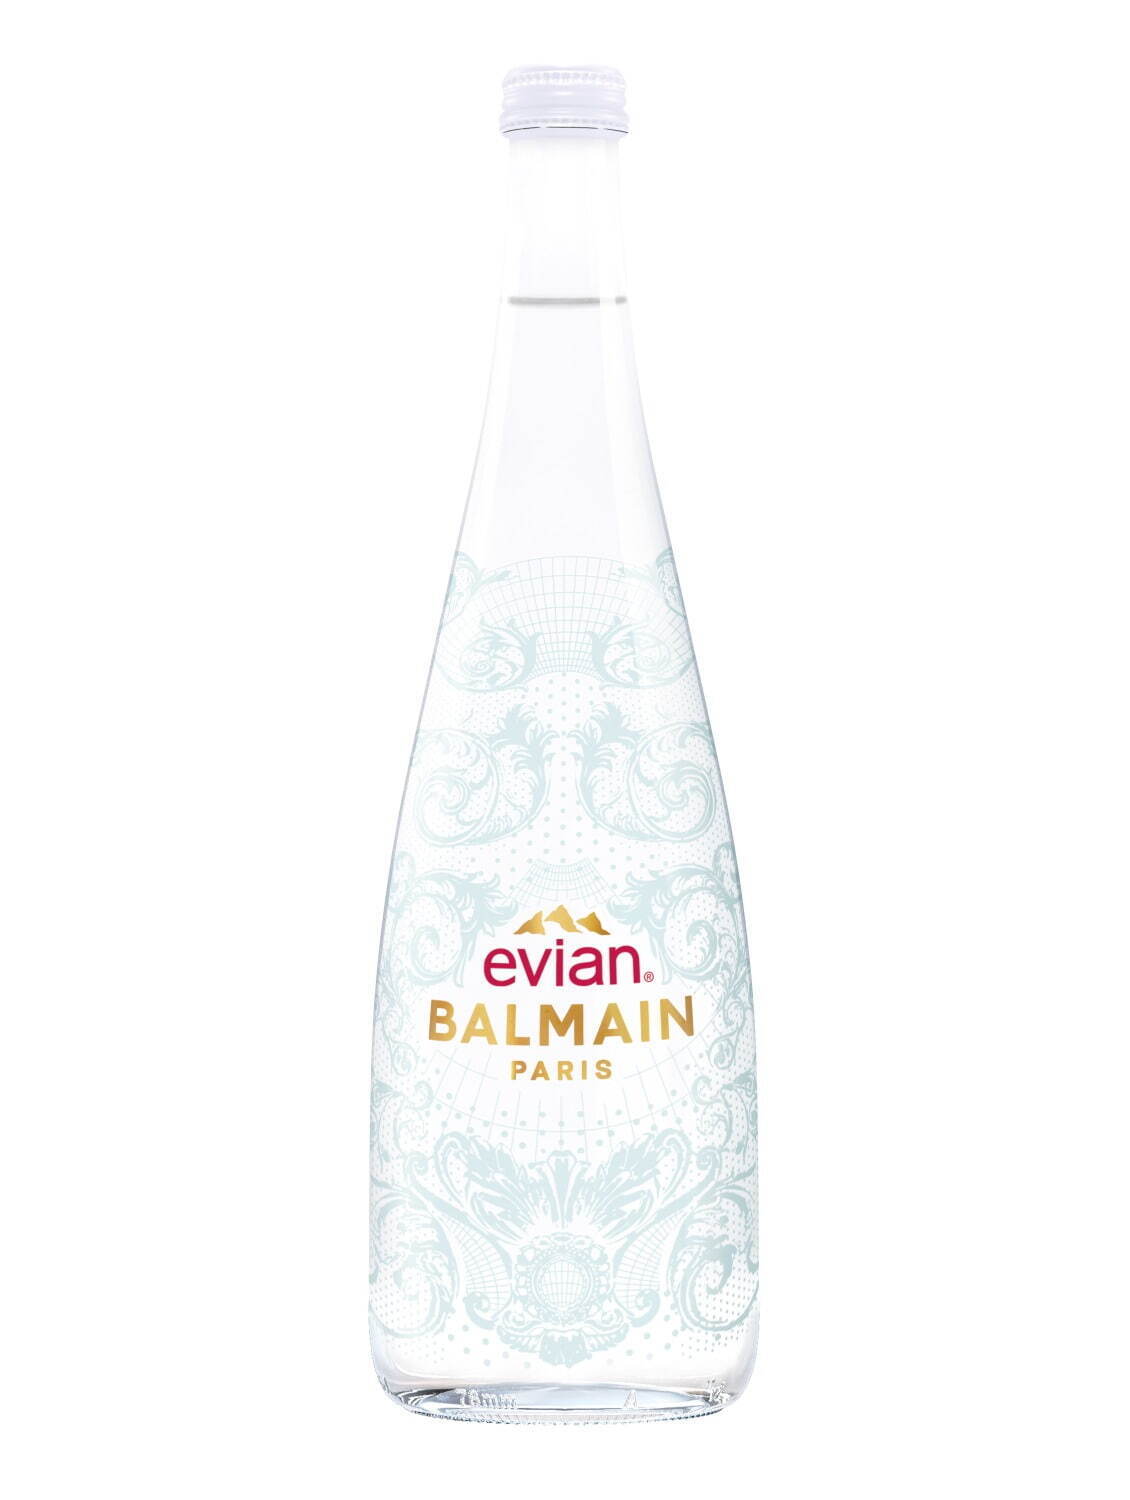 2022年「エビアン」×「バルマン」限定ボトル 750mL 1,080円 ※メーカー希望小売価格。